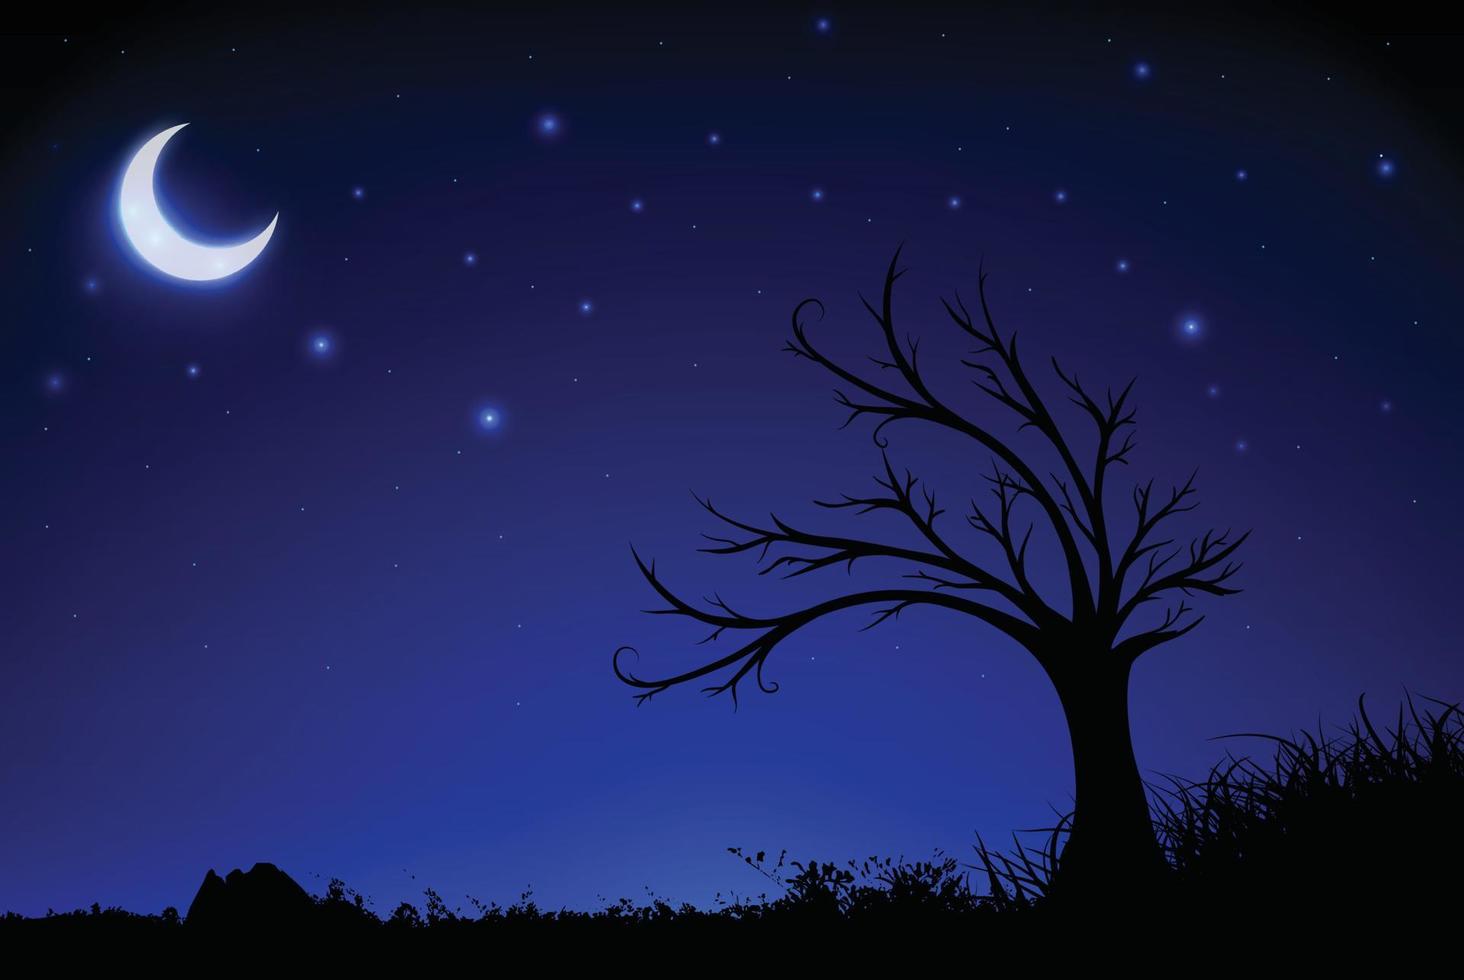 stjärnklar natt bakgrund med halvmåne, träd och gräs siluett. widescreen stjärnklar natt bakgrund vektor